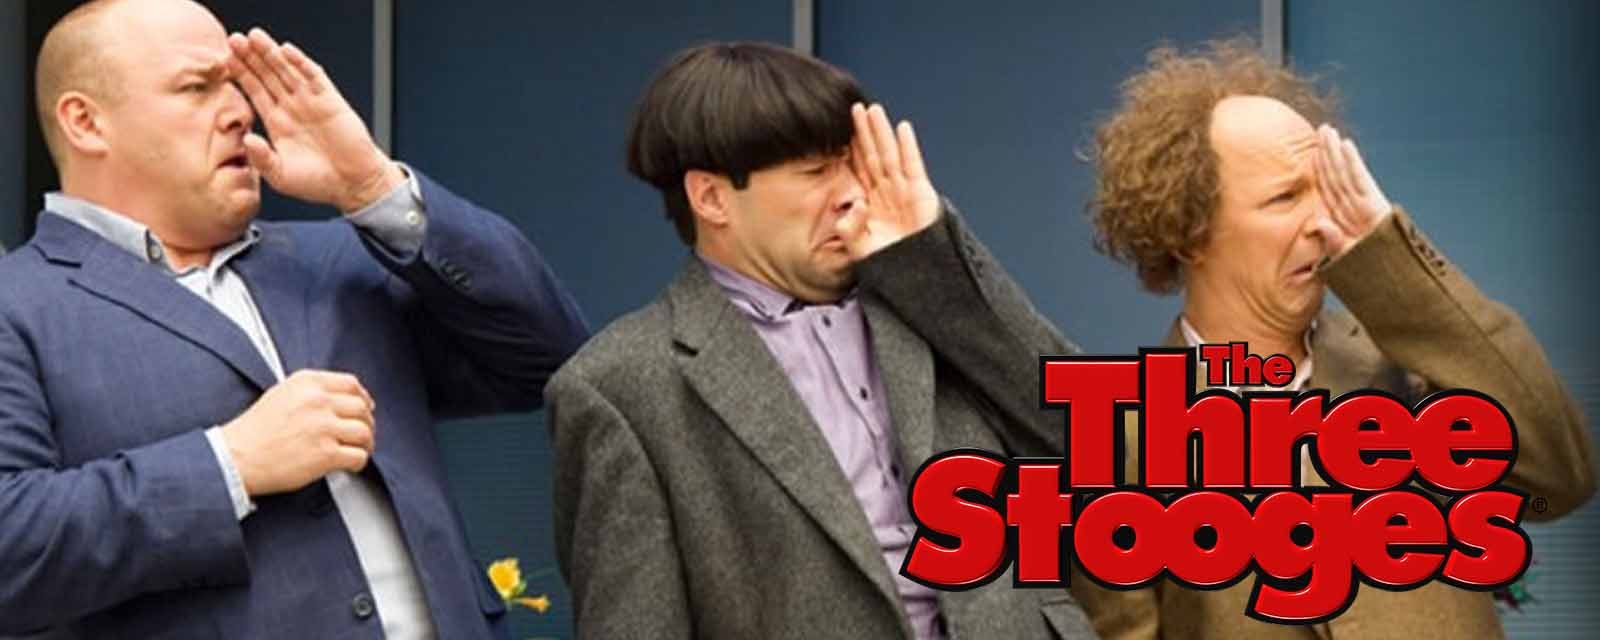 The Three Stooges Movie (2012)